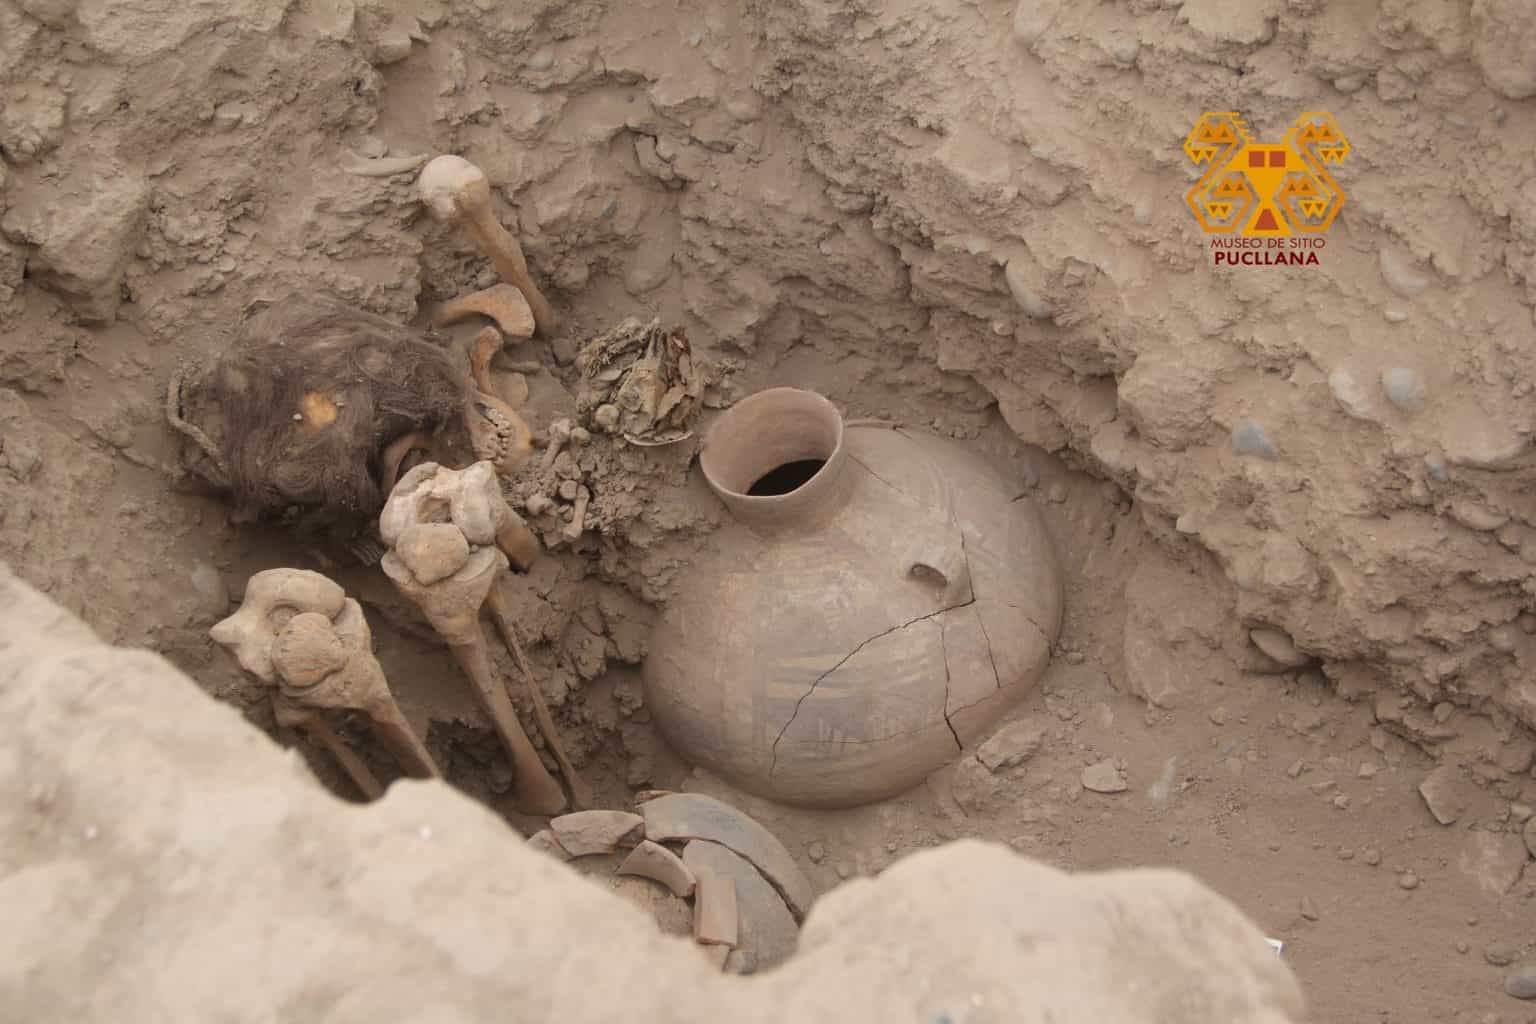 A múmia foi encontrada com outros artefatos arqueológicos como tecidos e vasos de cerâmica em meio à cidade